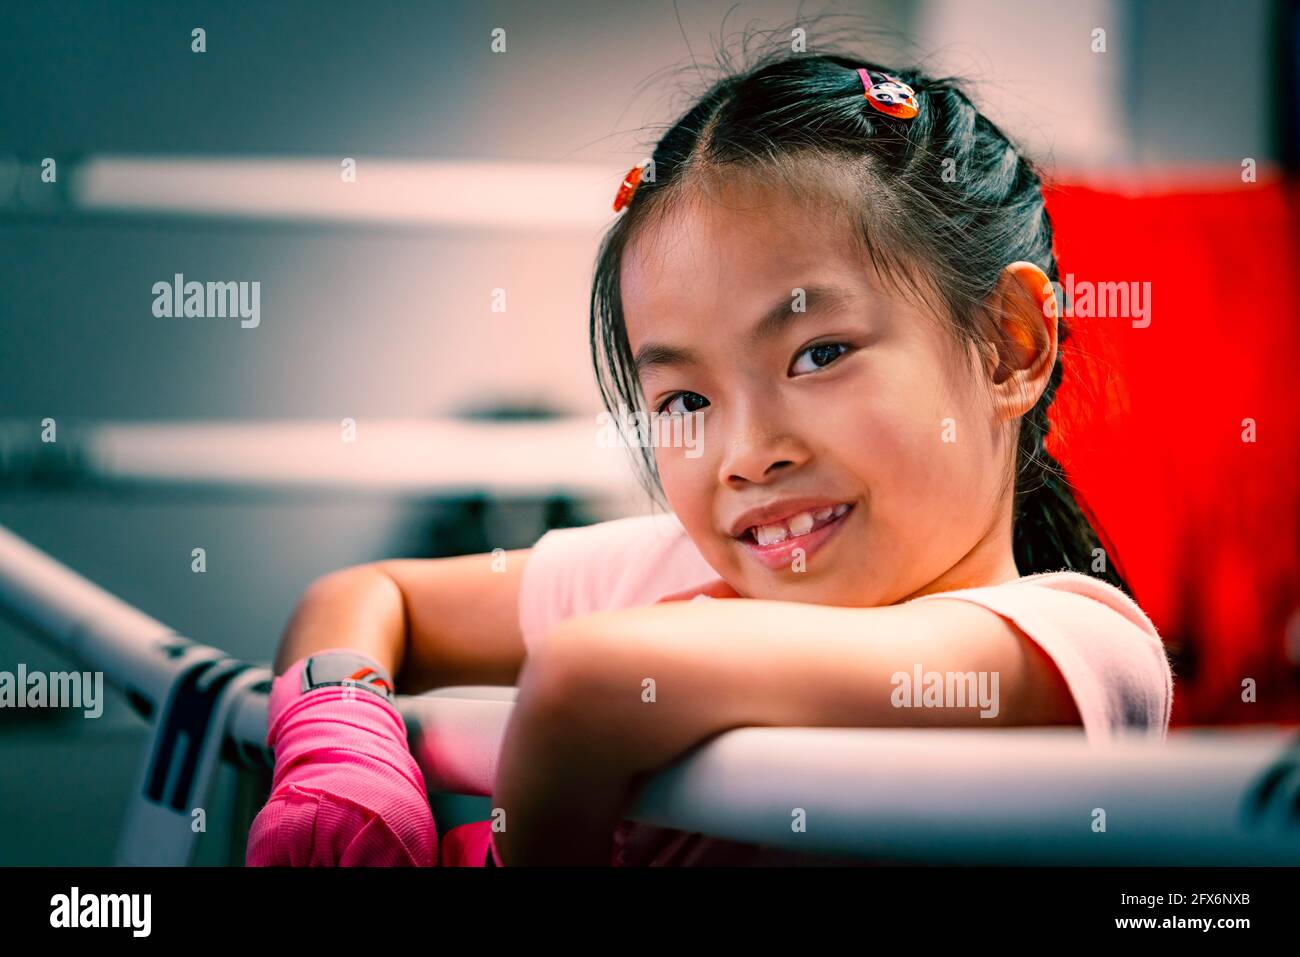 Portrait d'une fille asiatique sur l'anneau de boxe, tenant la robe de l'anneau de boxe, gros plan sur le visage mignon avec le sourire, yeux regardant l'appareil photo, couleur ajustée. Enfant Banque D'Images